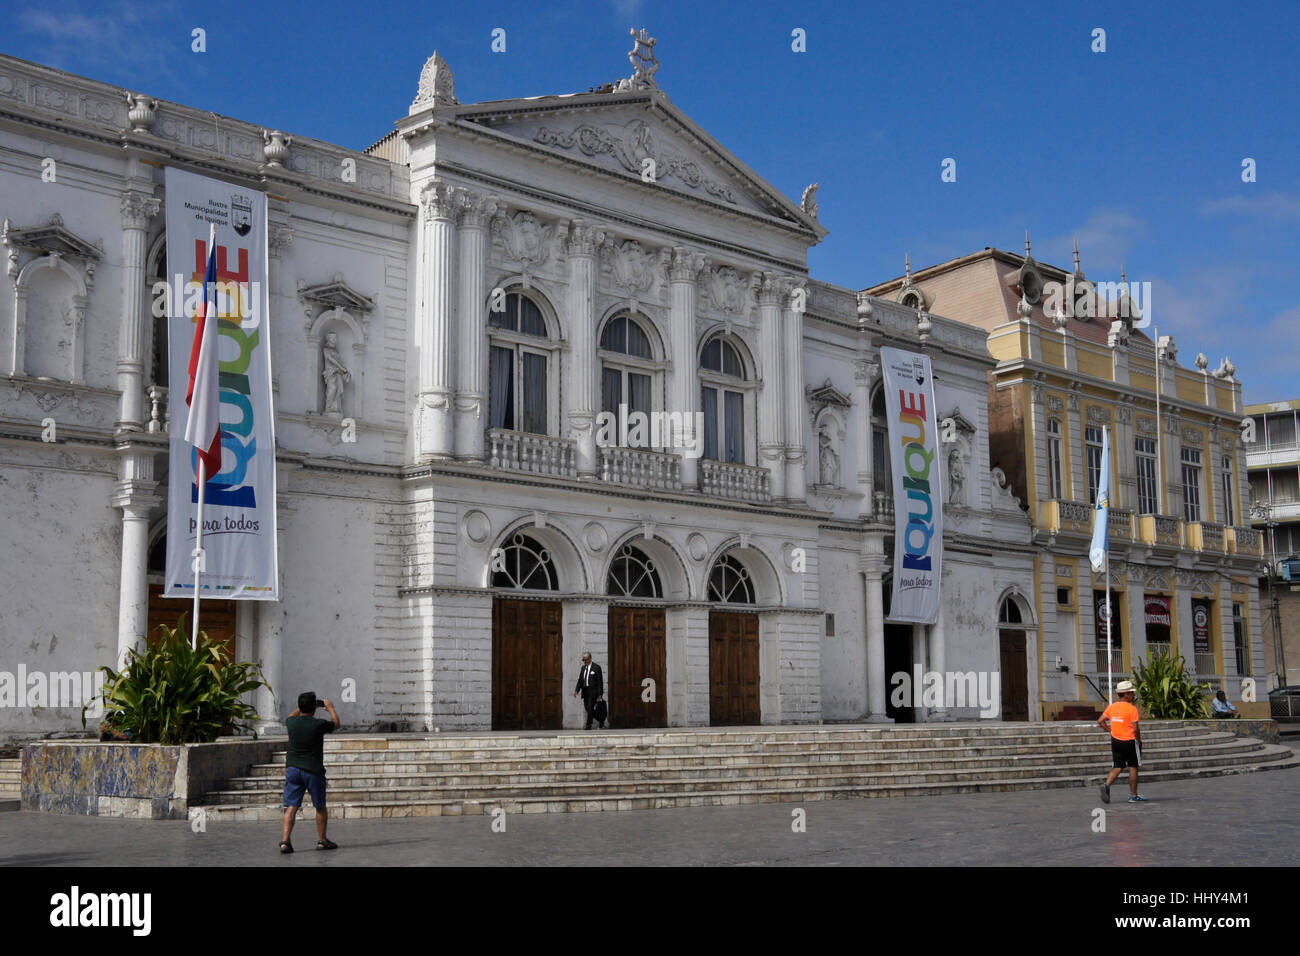 Teatro Municipal and Sociedad Protectora de Empleados de Tarapaca facing Plaza Prat, Iquique, Chile Stock Photo